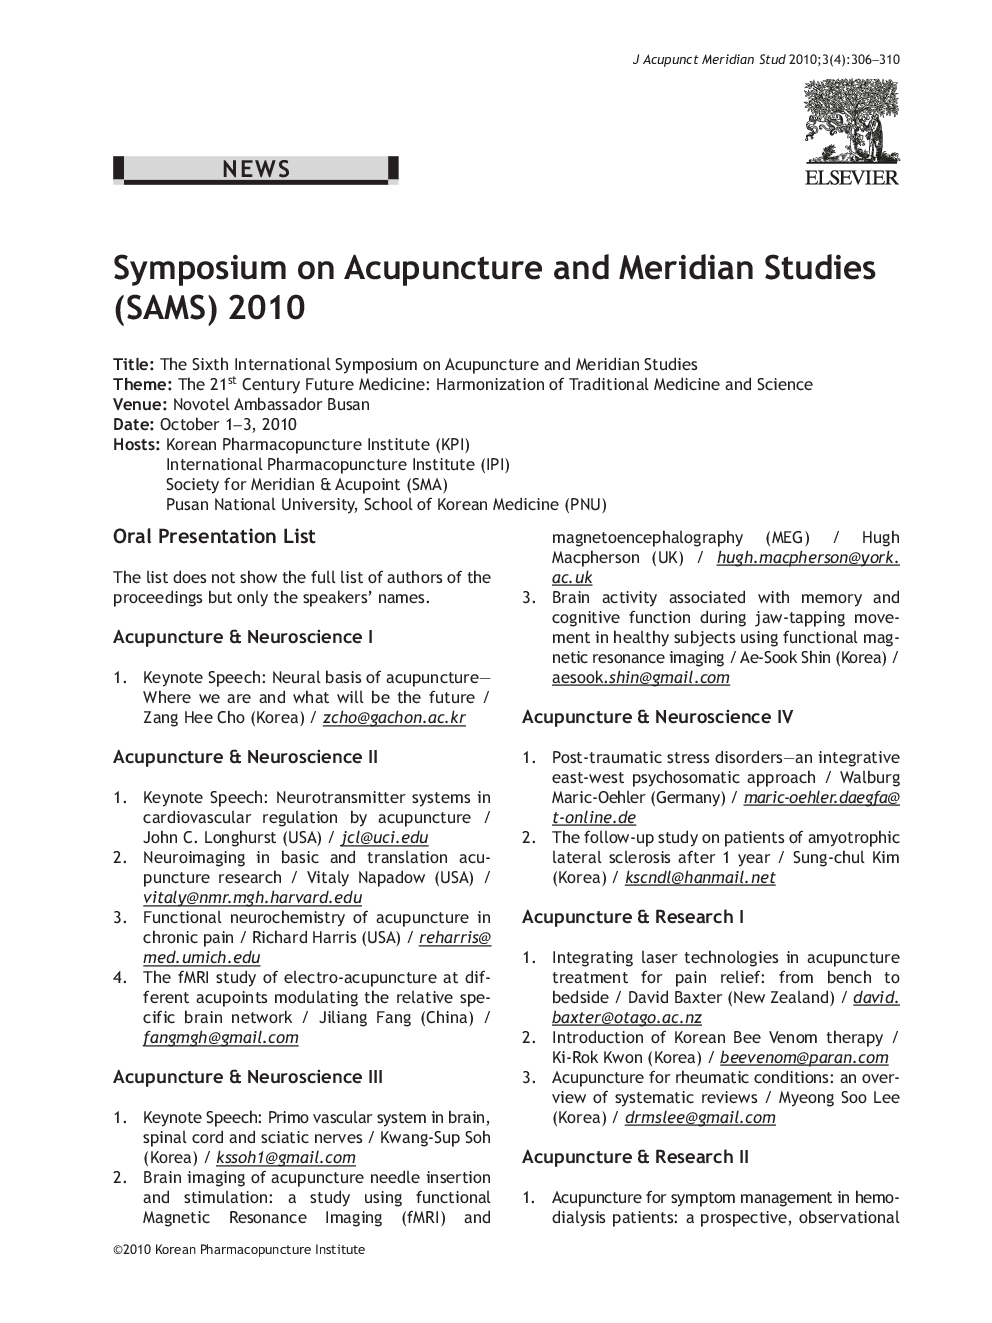 Symposium on Acupuncture and Meridian Studies (SAMS) 2010